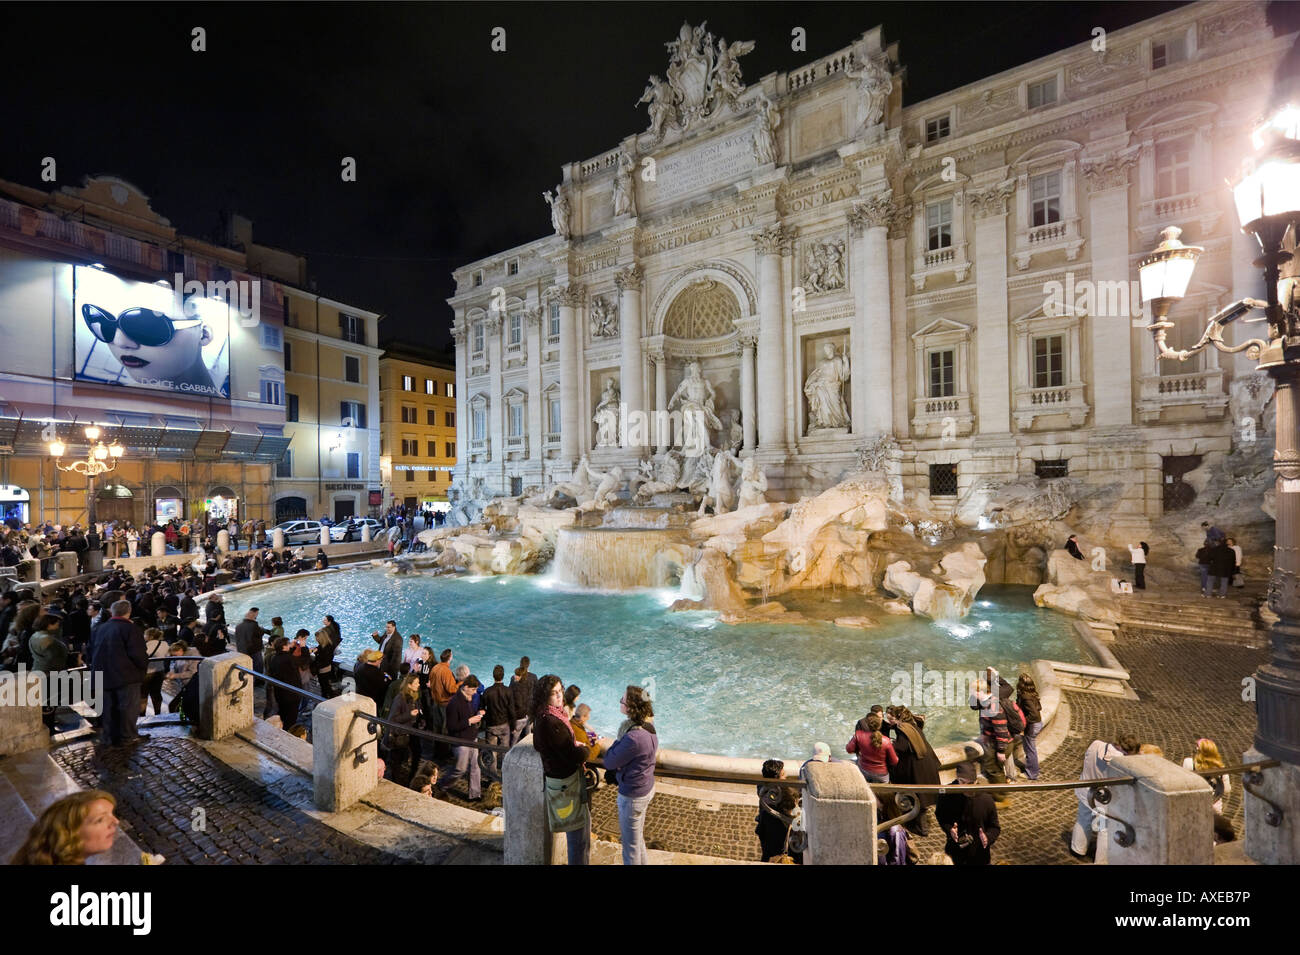 Fontaine de Trevi, Rome. La fontaine de Trevi (ou Fontana di Trevi) la nuit avec un grand panneau d'affichage Dolce Gabbana à gauche, Centre historique, Rome, Italie Banque D'Images